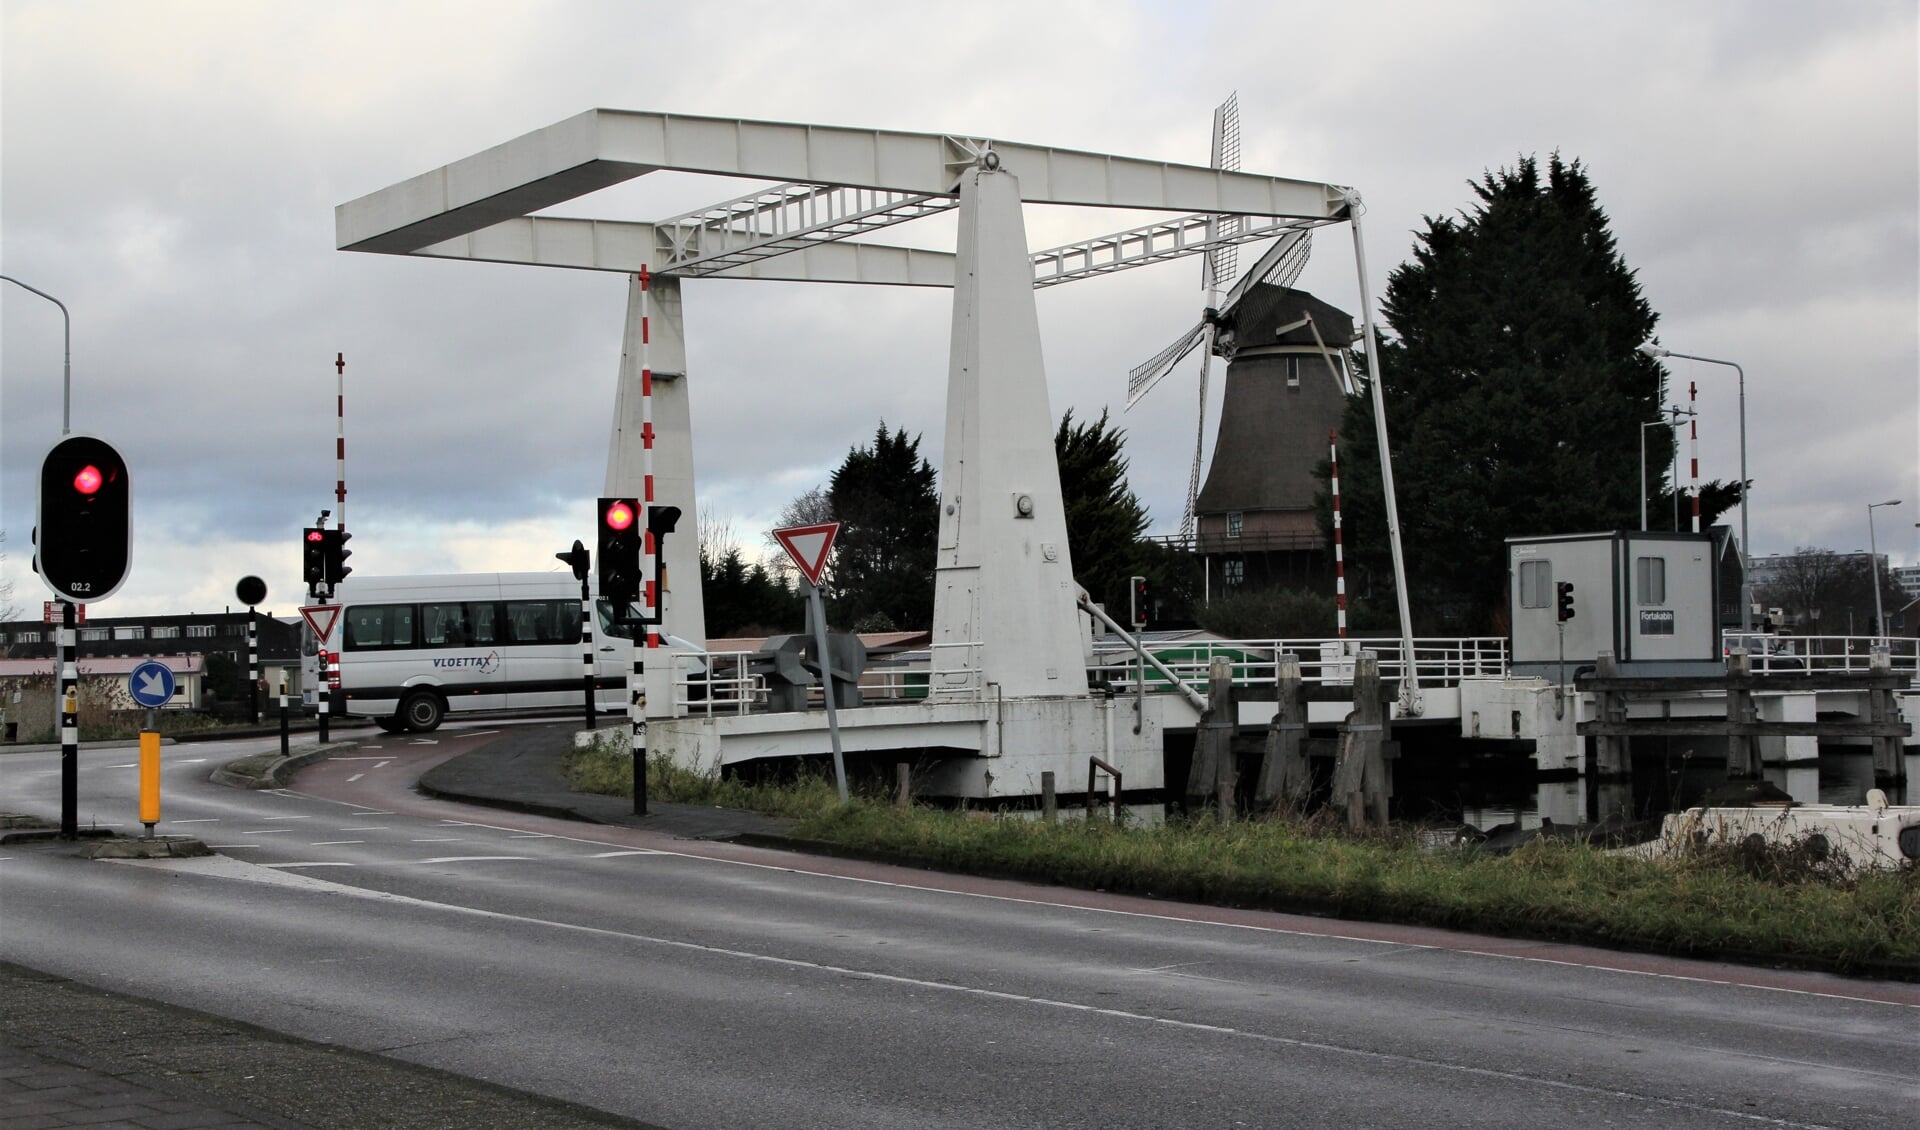 De Sloterbrug als verbinding voor onderlinge uitwisseling. Niet voor doorgaand verkeer. Ook in de toekomstige situatie.